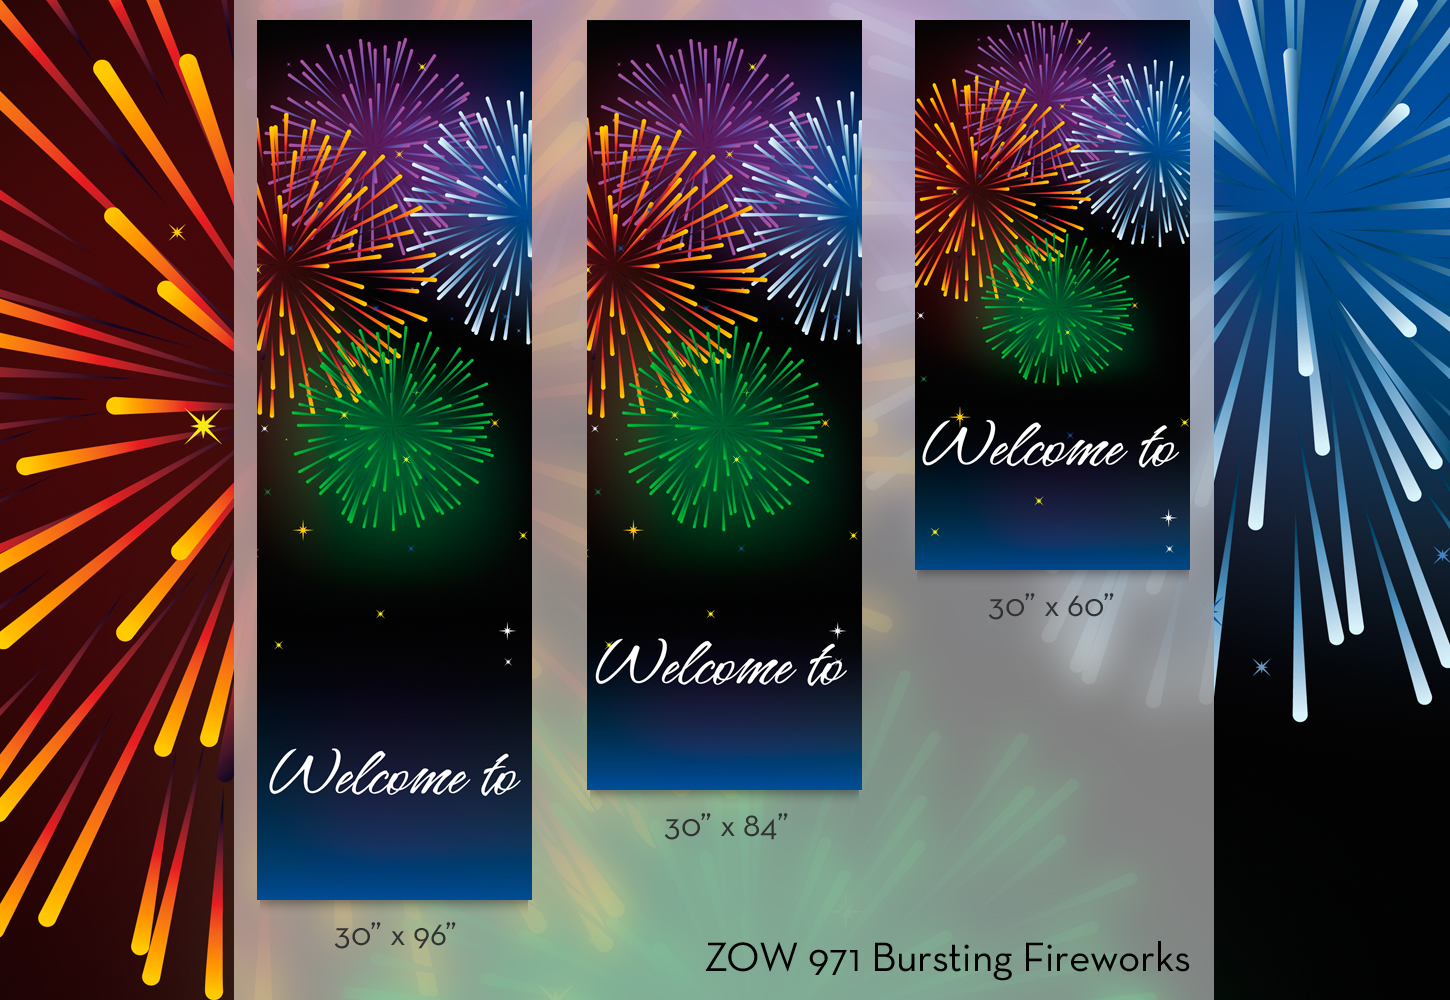 ZOW 971 Bursting Fireworks